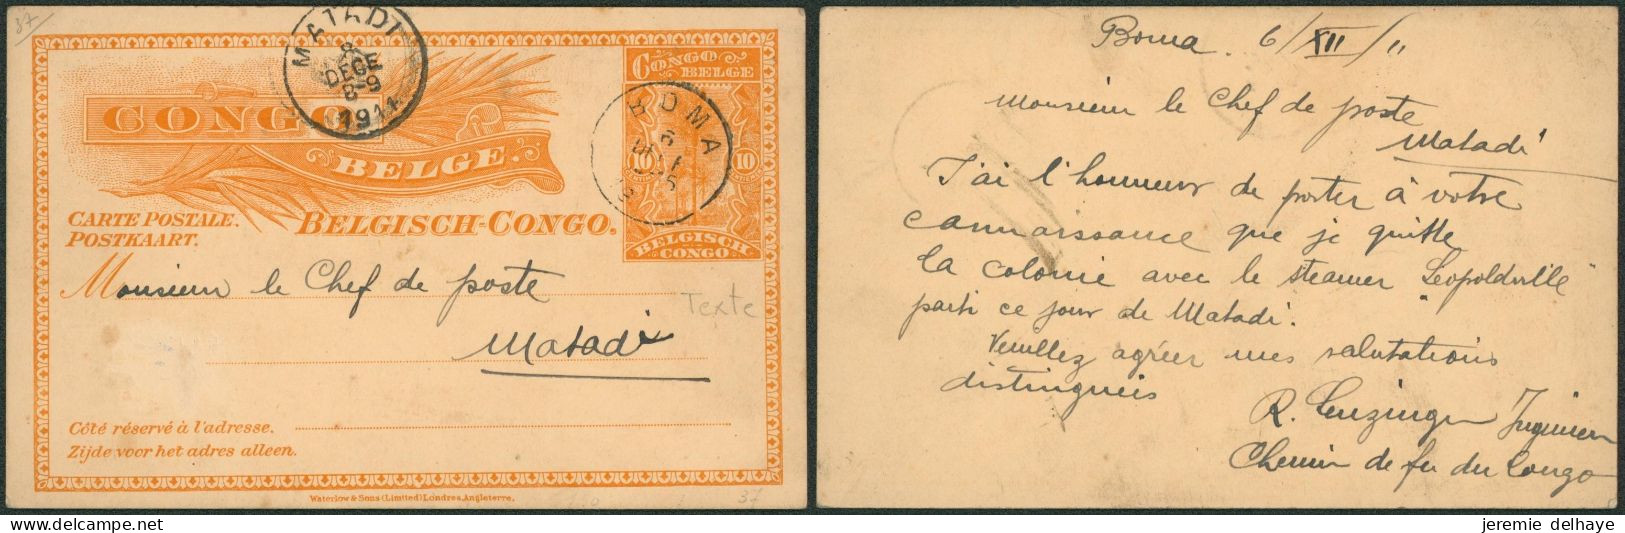 Congo Belge - EP Au Type N°37 (SBEP) 10ctm Orange Expédié De Boma (1911) > Chef De Poste à Matadi / Texte - Stamped Stationery